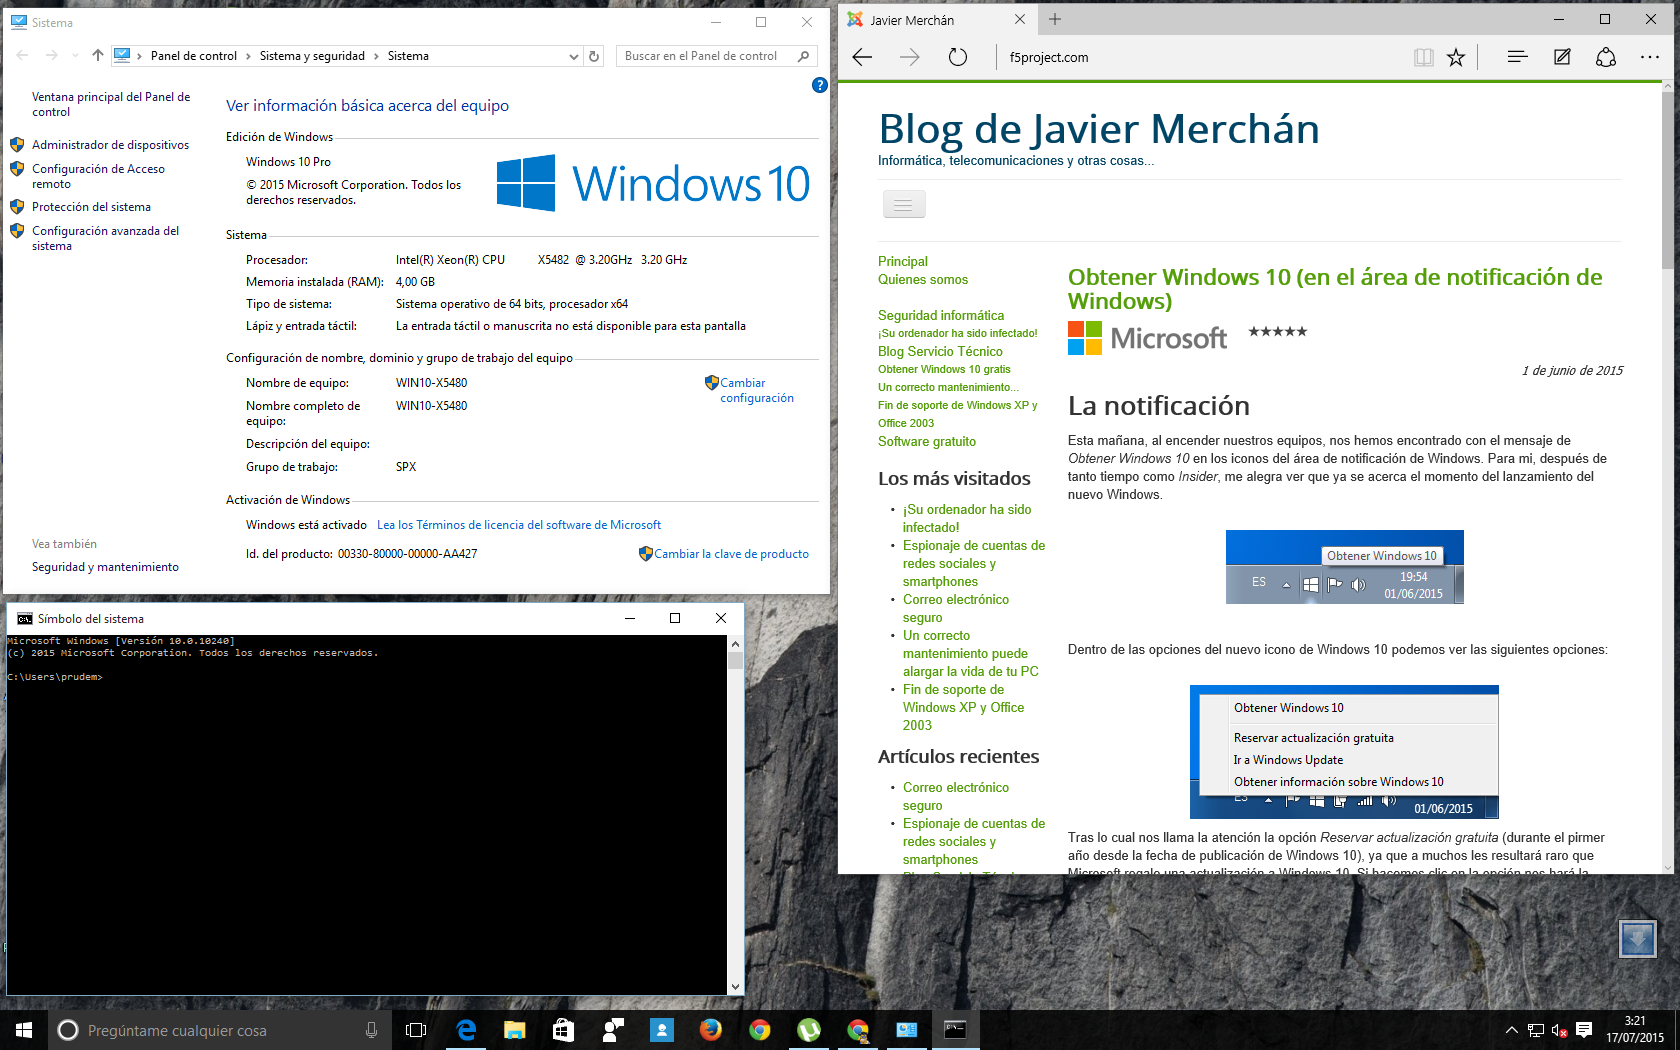 Windows 10 Pro 10.0.10240